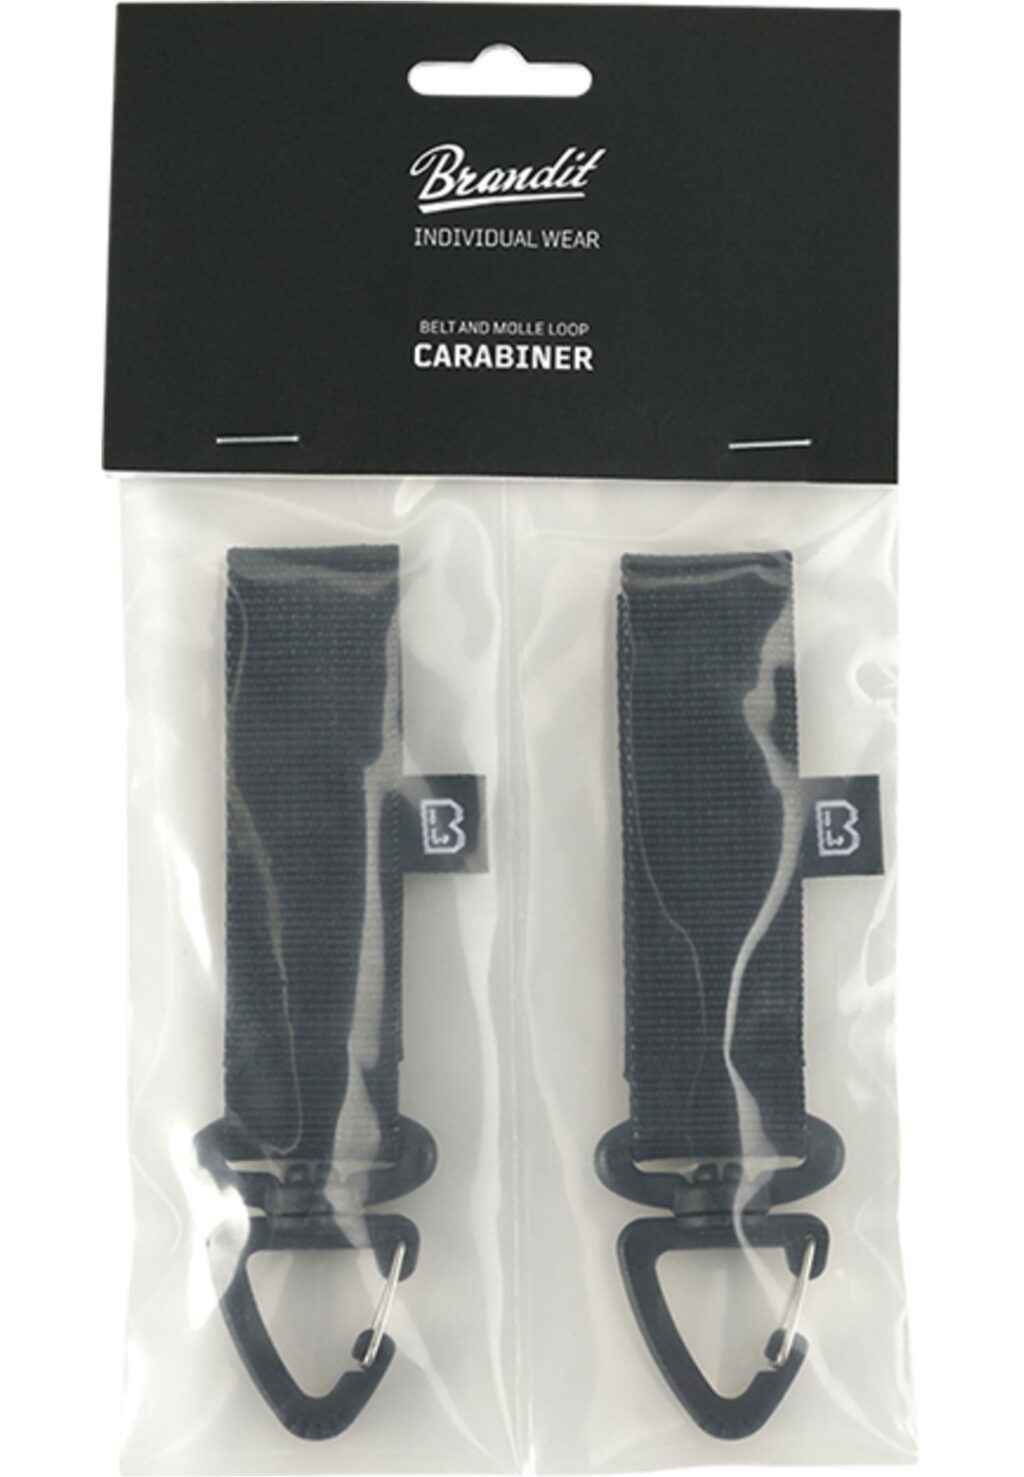 Brandit Belt and Molle Loop Carabiner 2-Pack black one BD8081